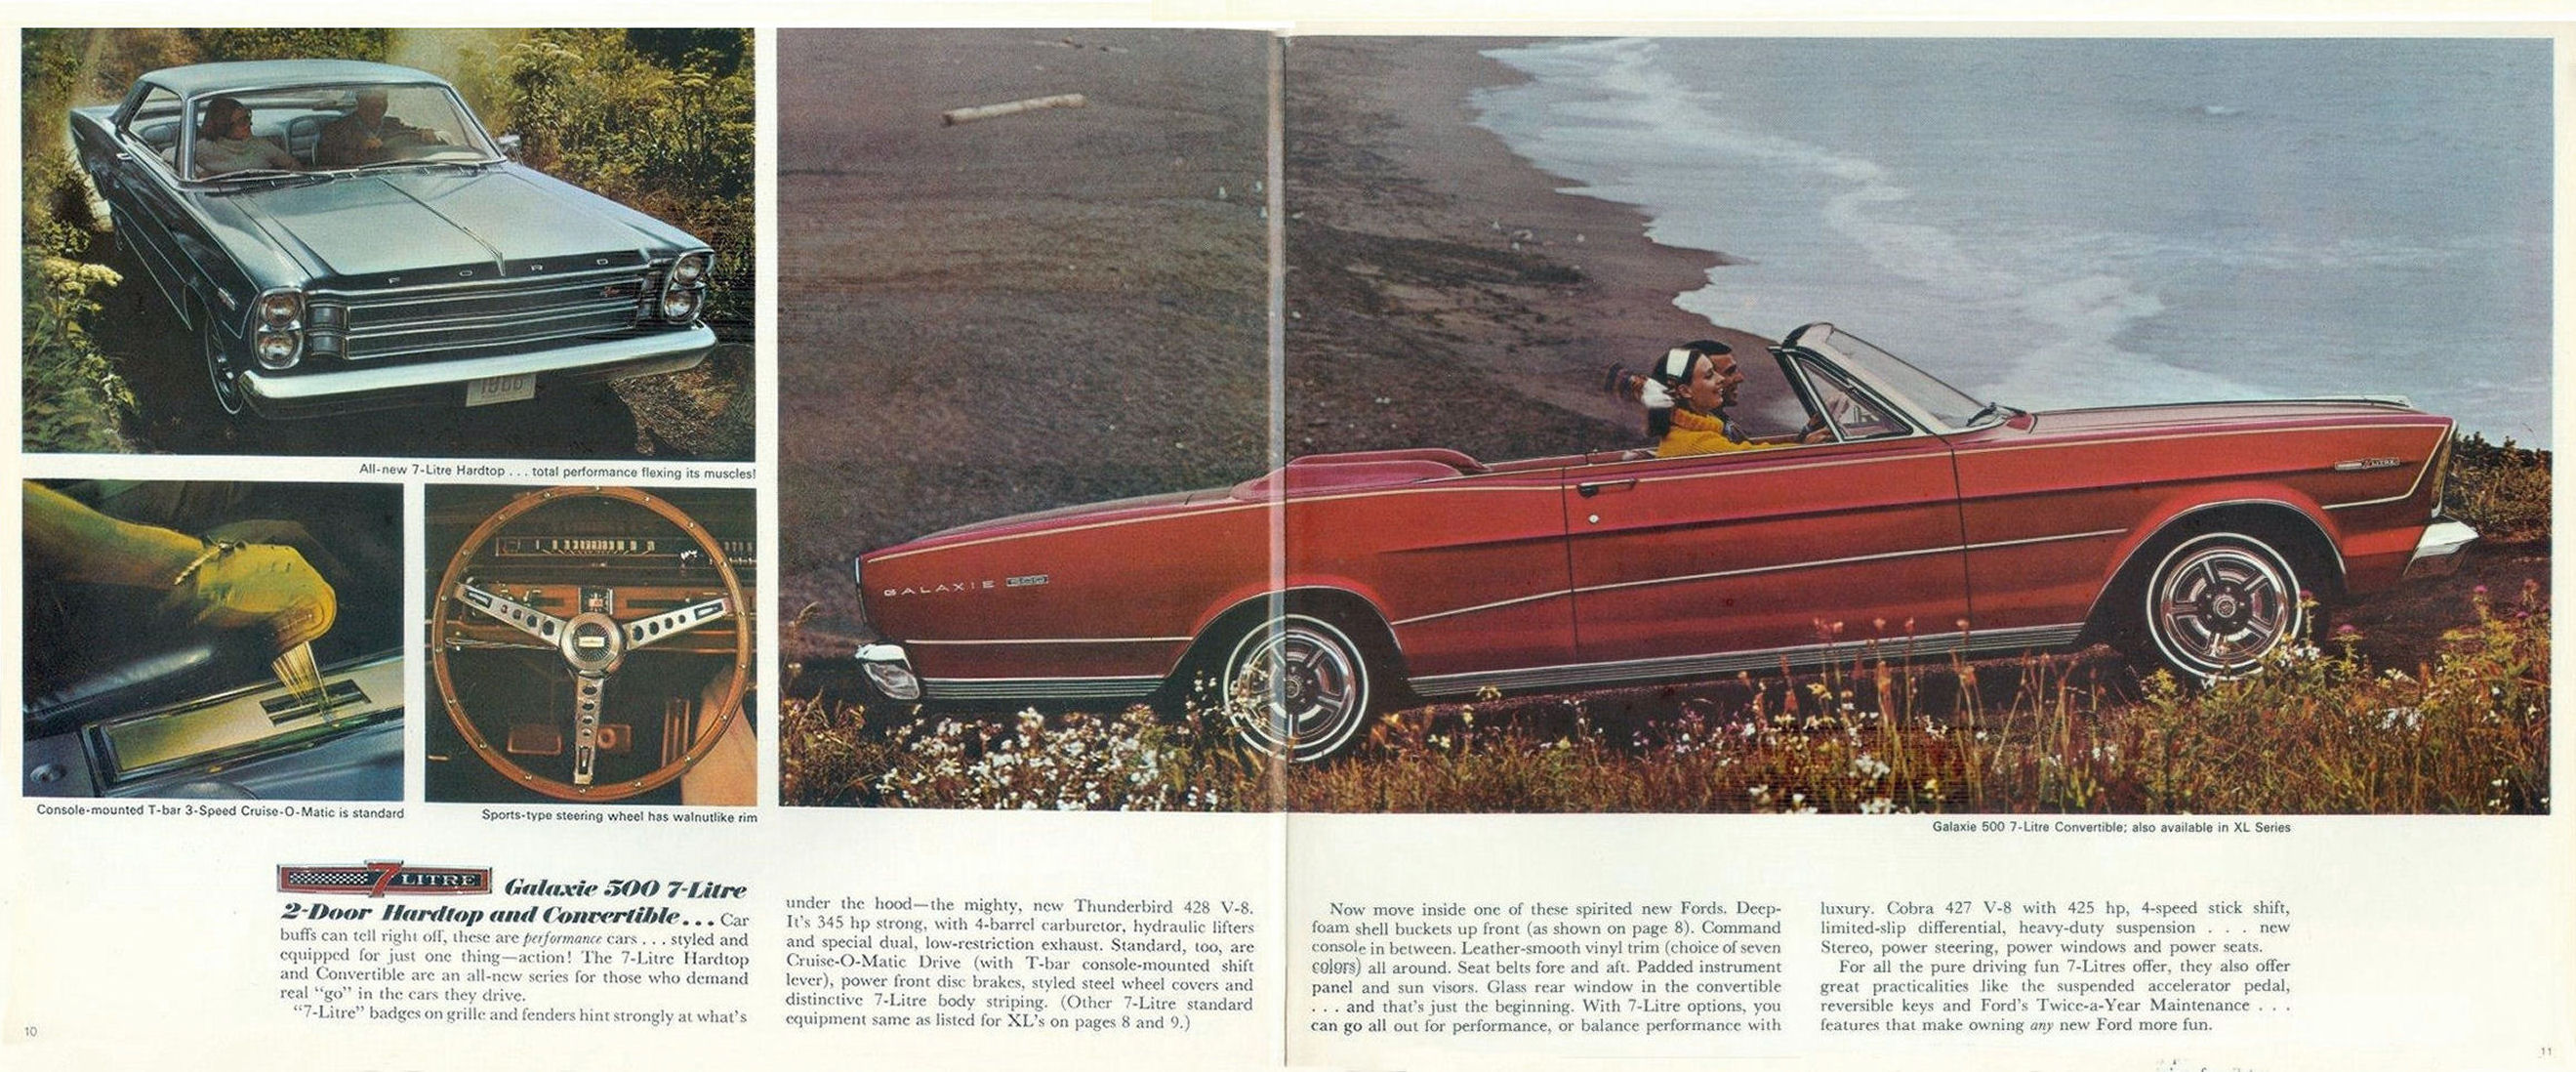 1966_Ford_Full_Size_Rev-10-11